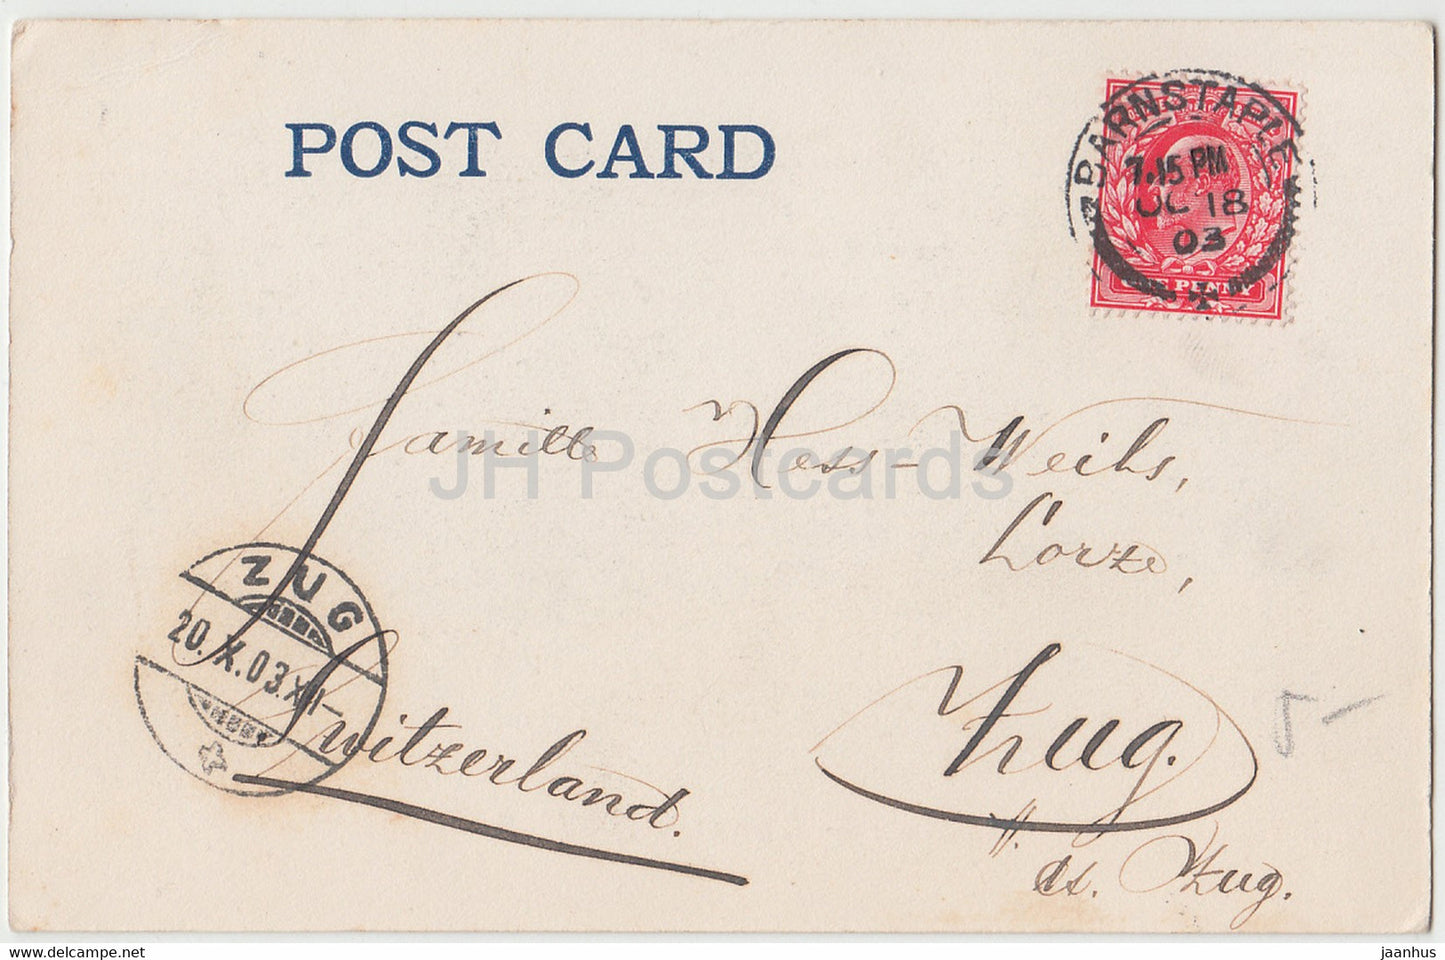 London – Tower of London – Pferdekutsche – 6204 – alte Postkarte – 1903 – England – Vereinigtes Königreich – gebraucht